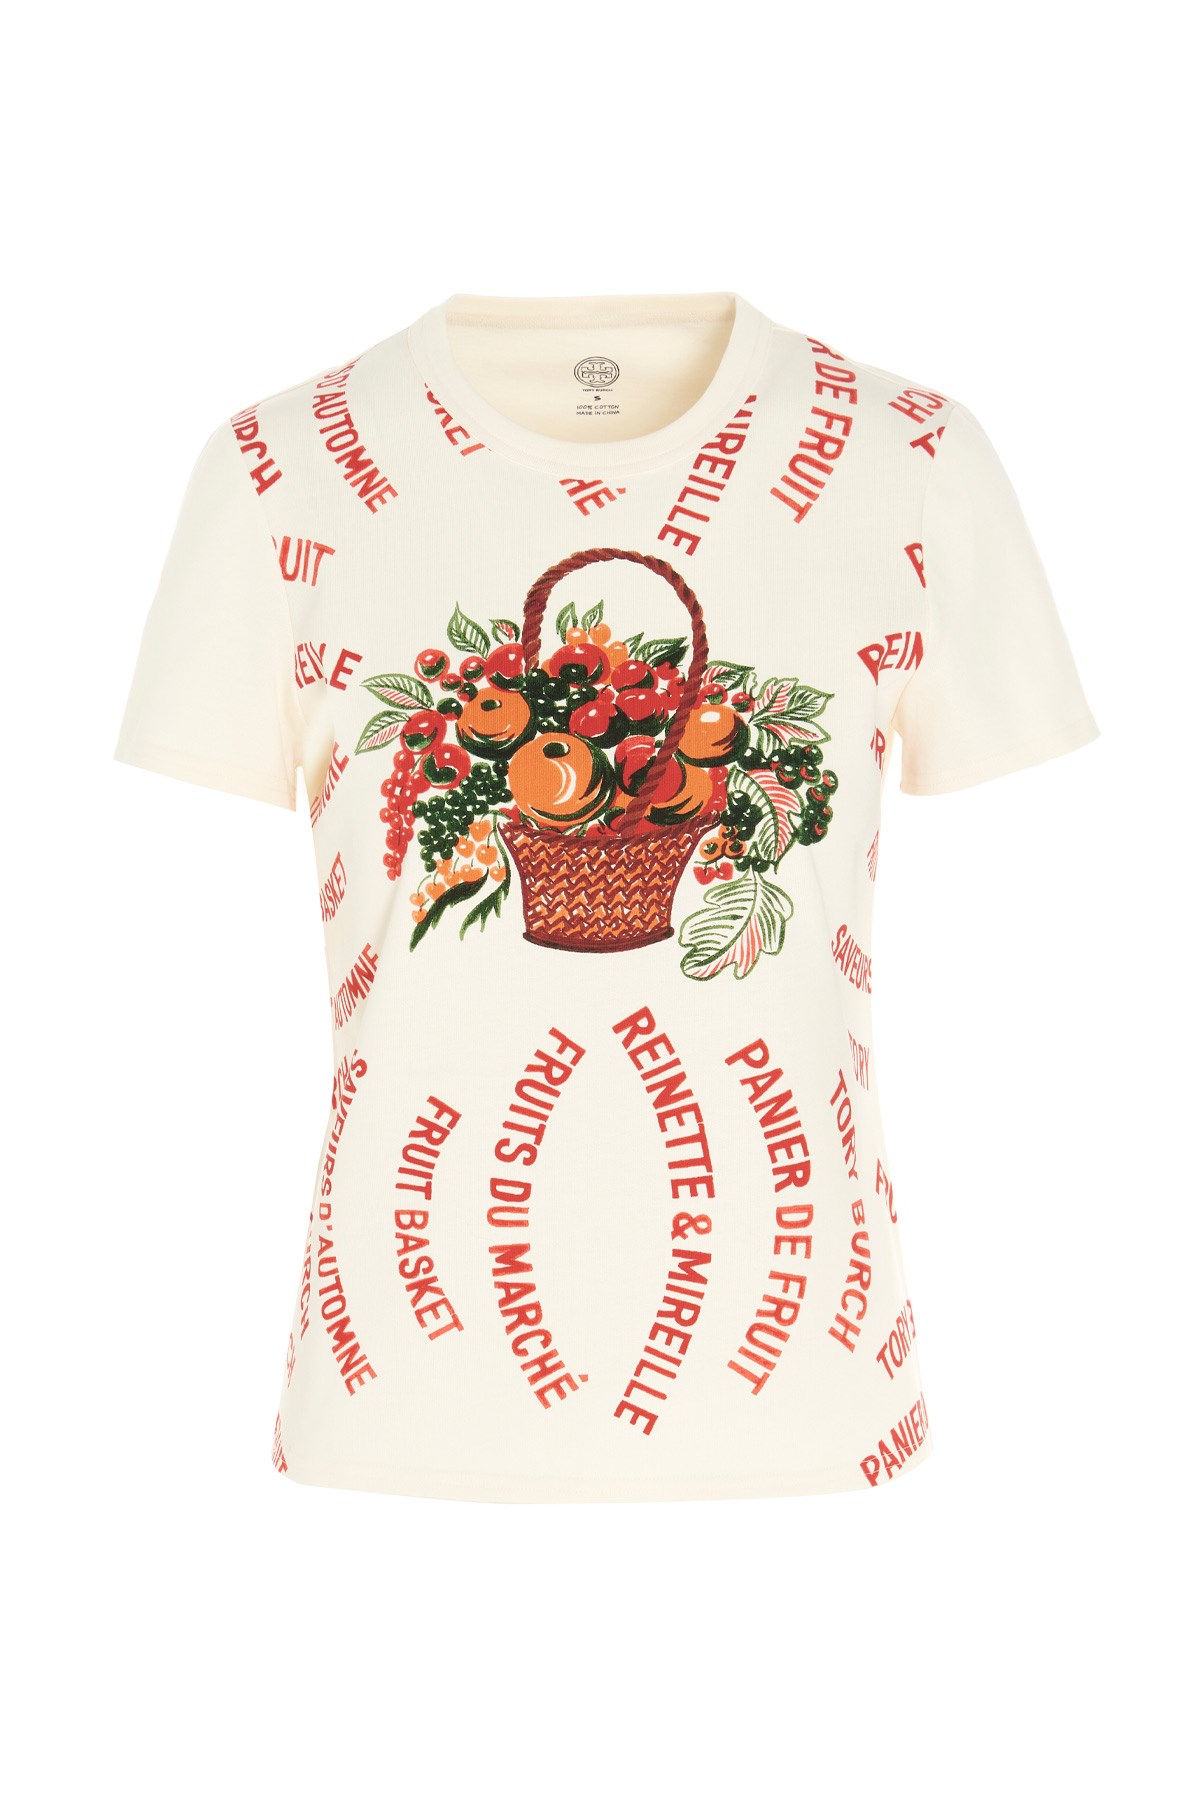 TORY BURCH 'Fruit Basket' T-Shirt